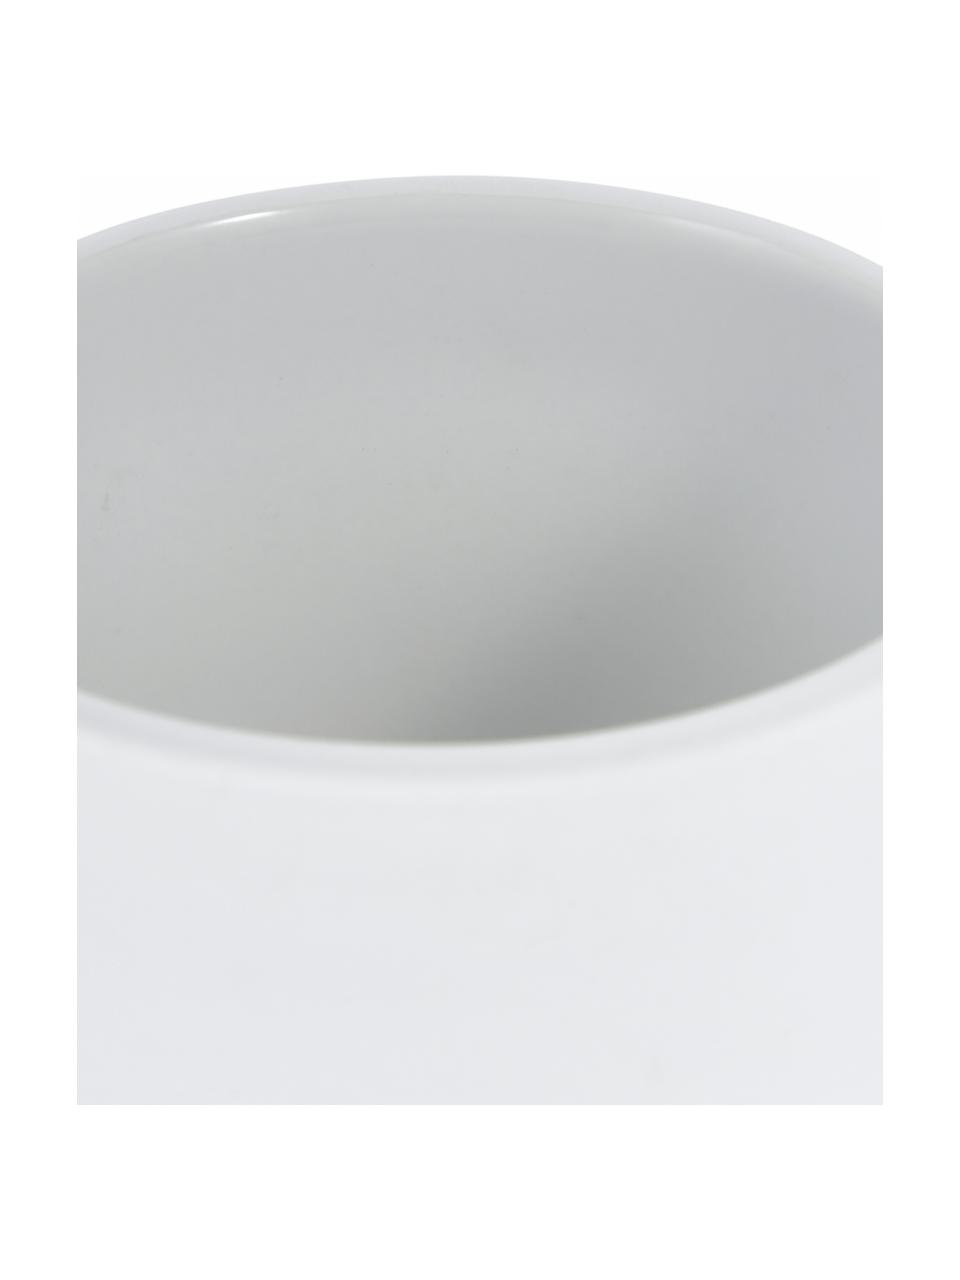 Seifenspender Ume aus Steingut mit Soft-Touch Oberfläche, Behälter: Steingut überzogen mit So, Weiß, Ø 8 x H 13 cm